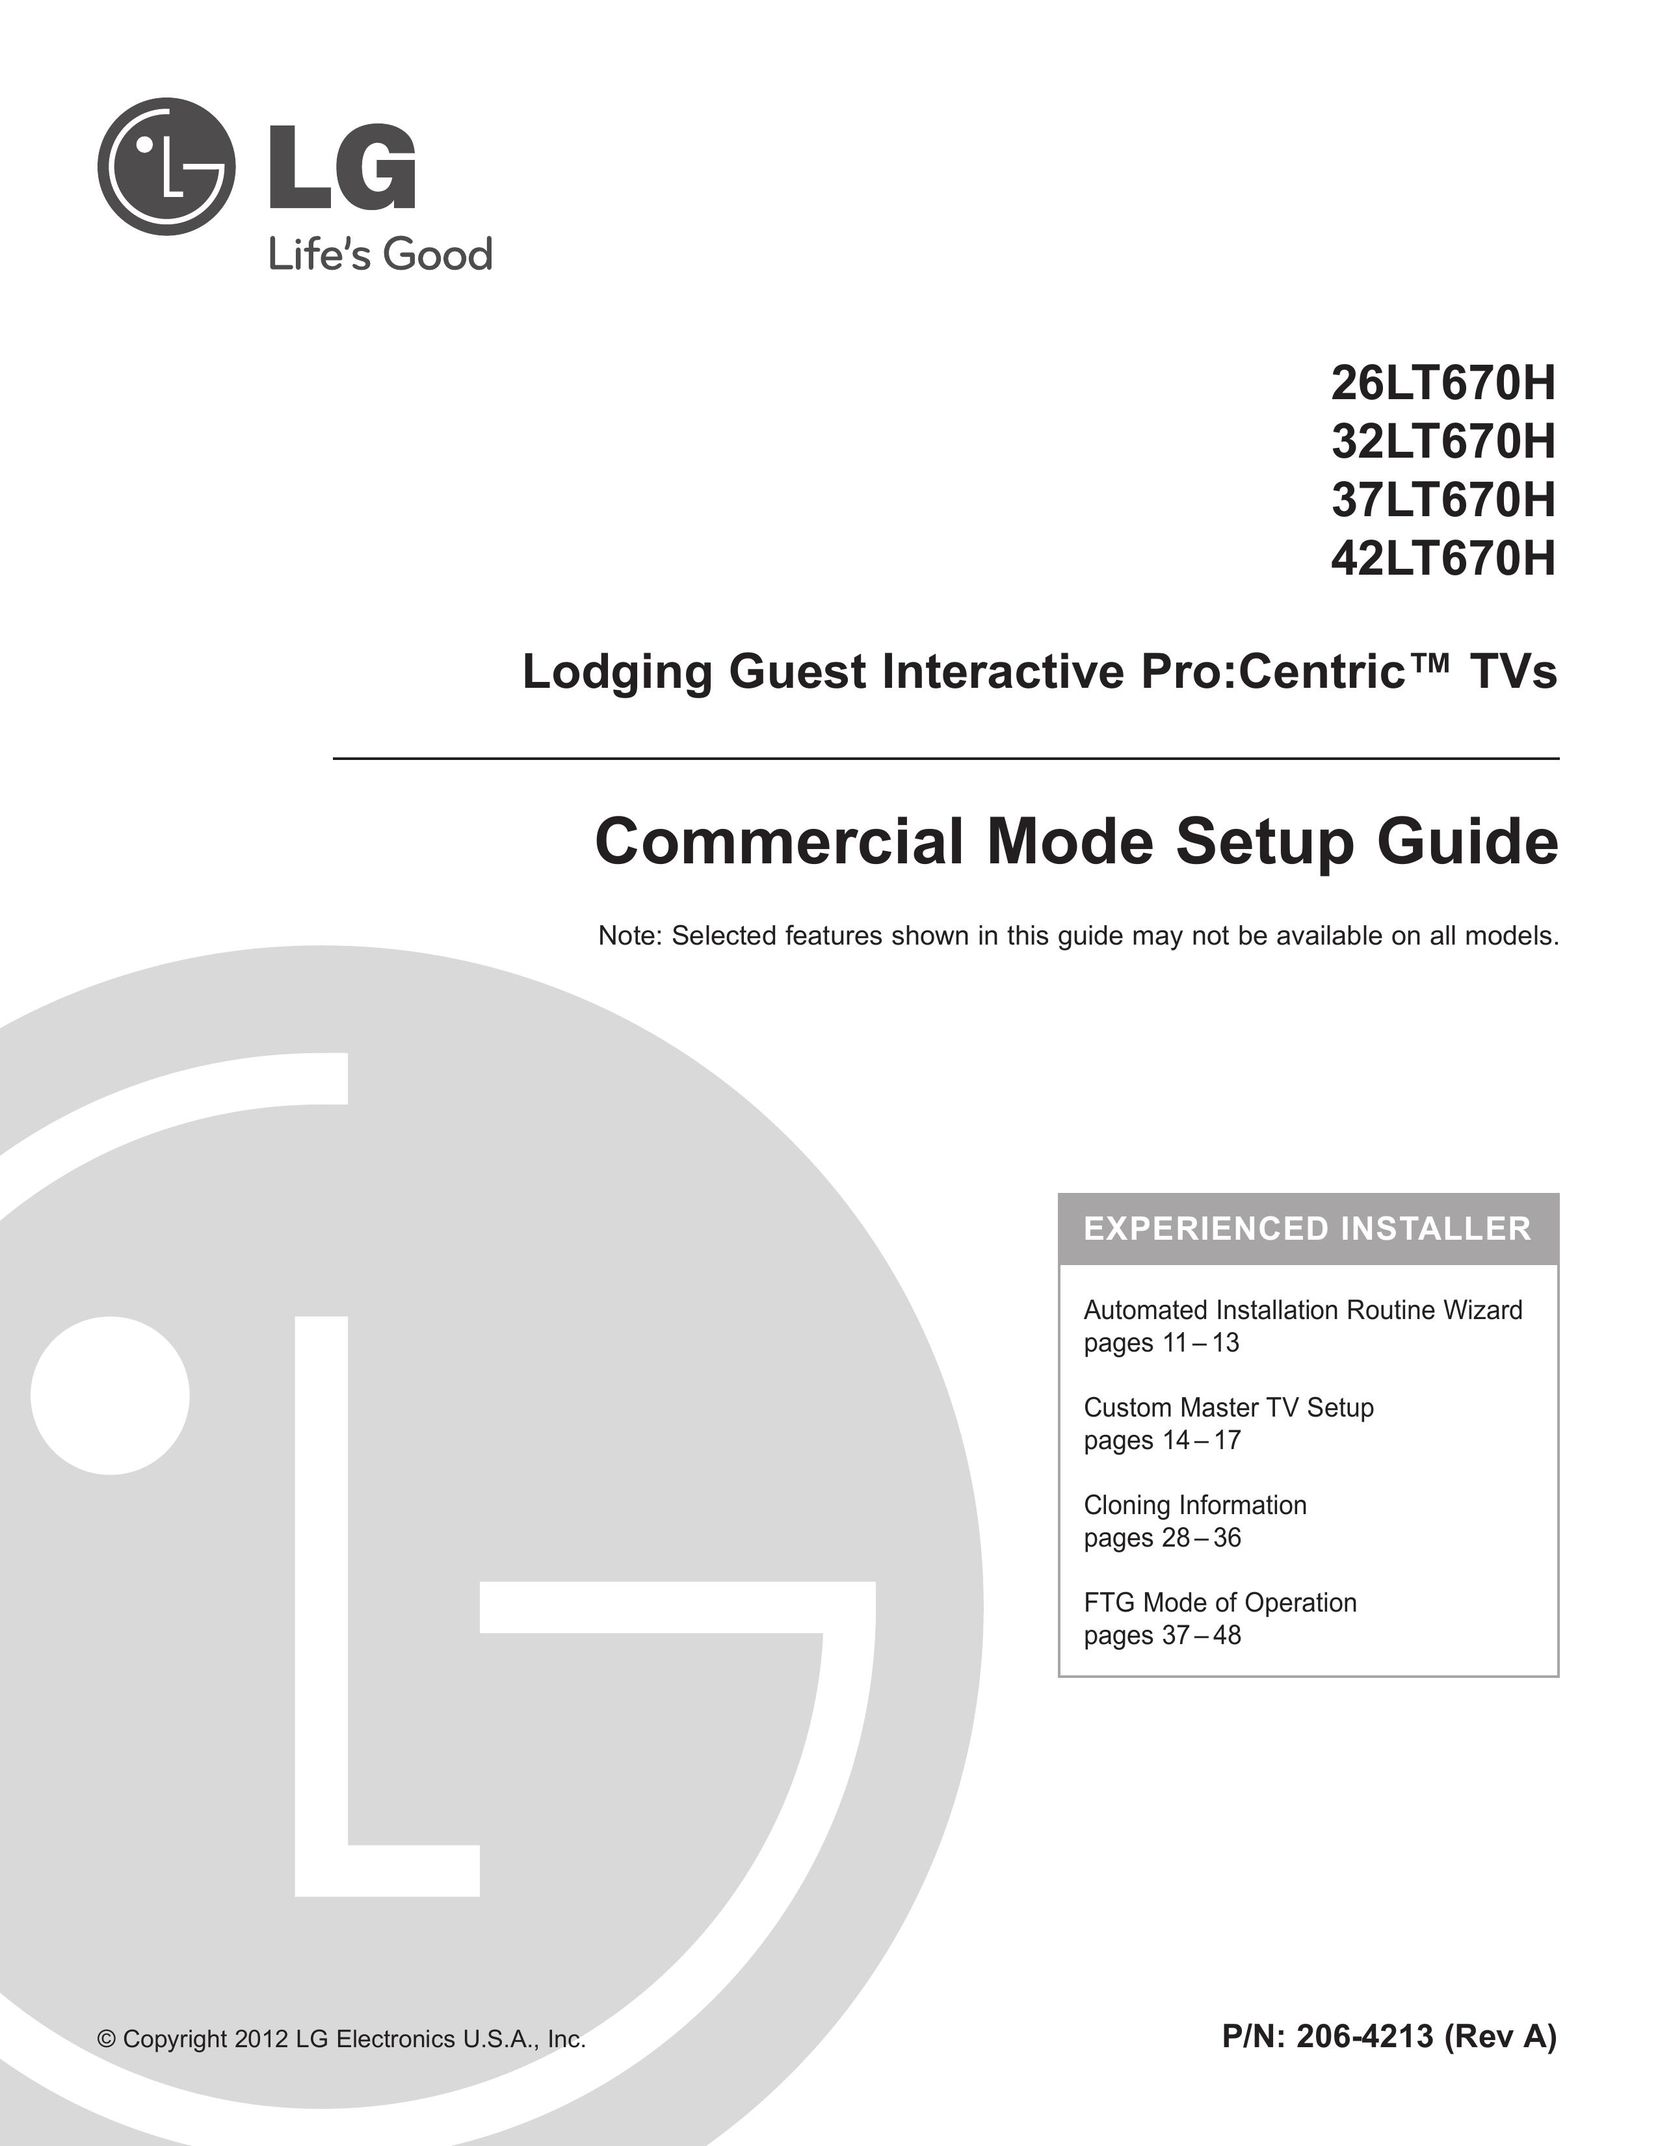 LG Electronics 42LT670H Model Vehicle User Manual